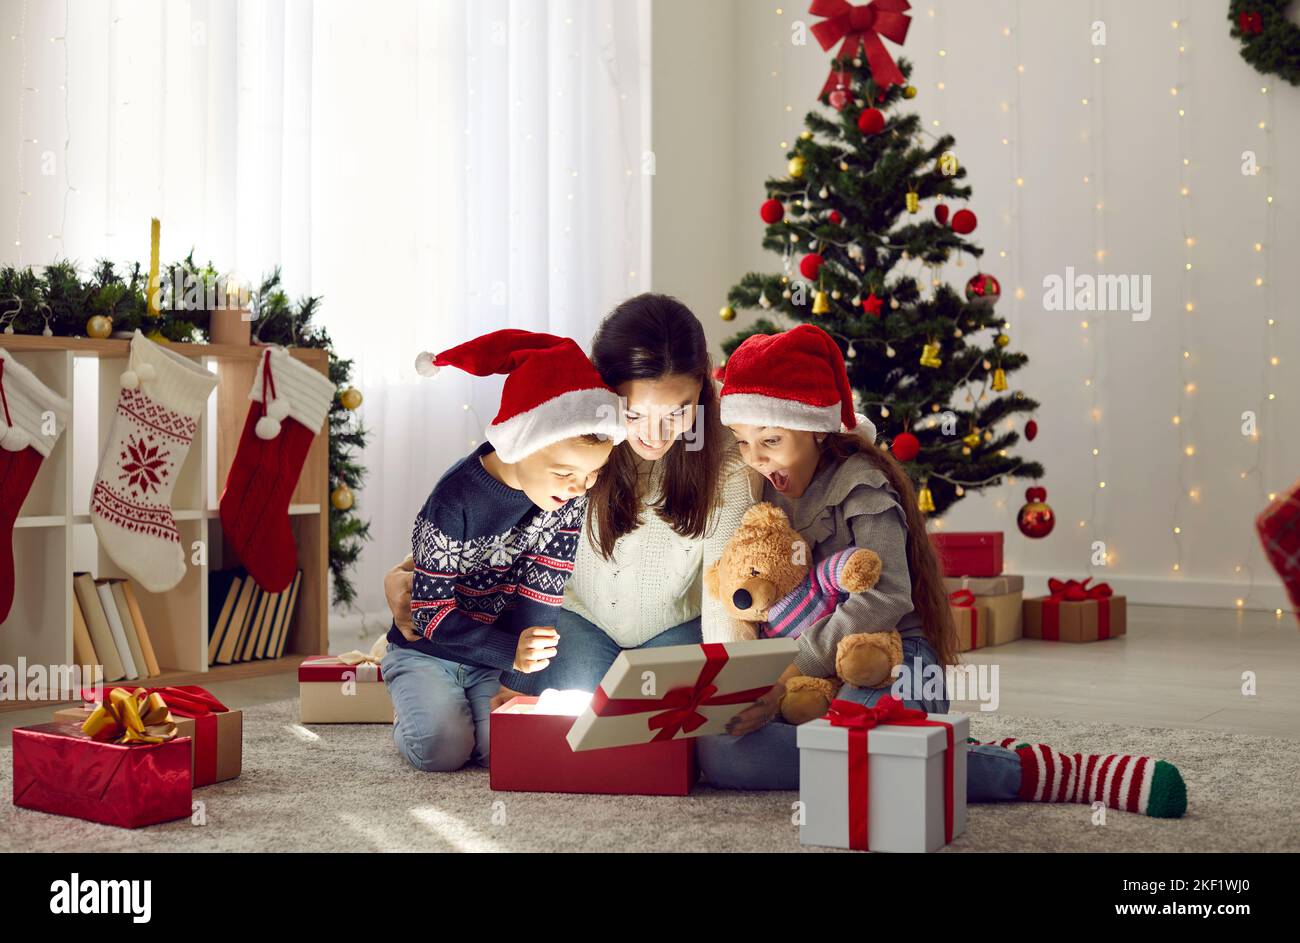 Madre felice e bambini trovano la sorpresa magica mentre aprono i regali di Natale insieme Foto Stock